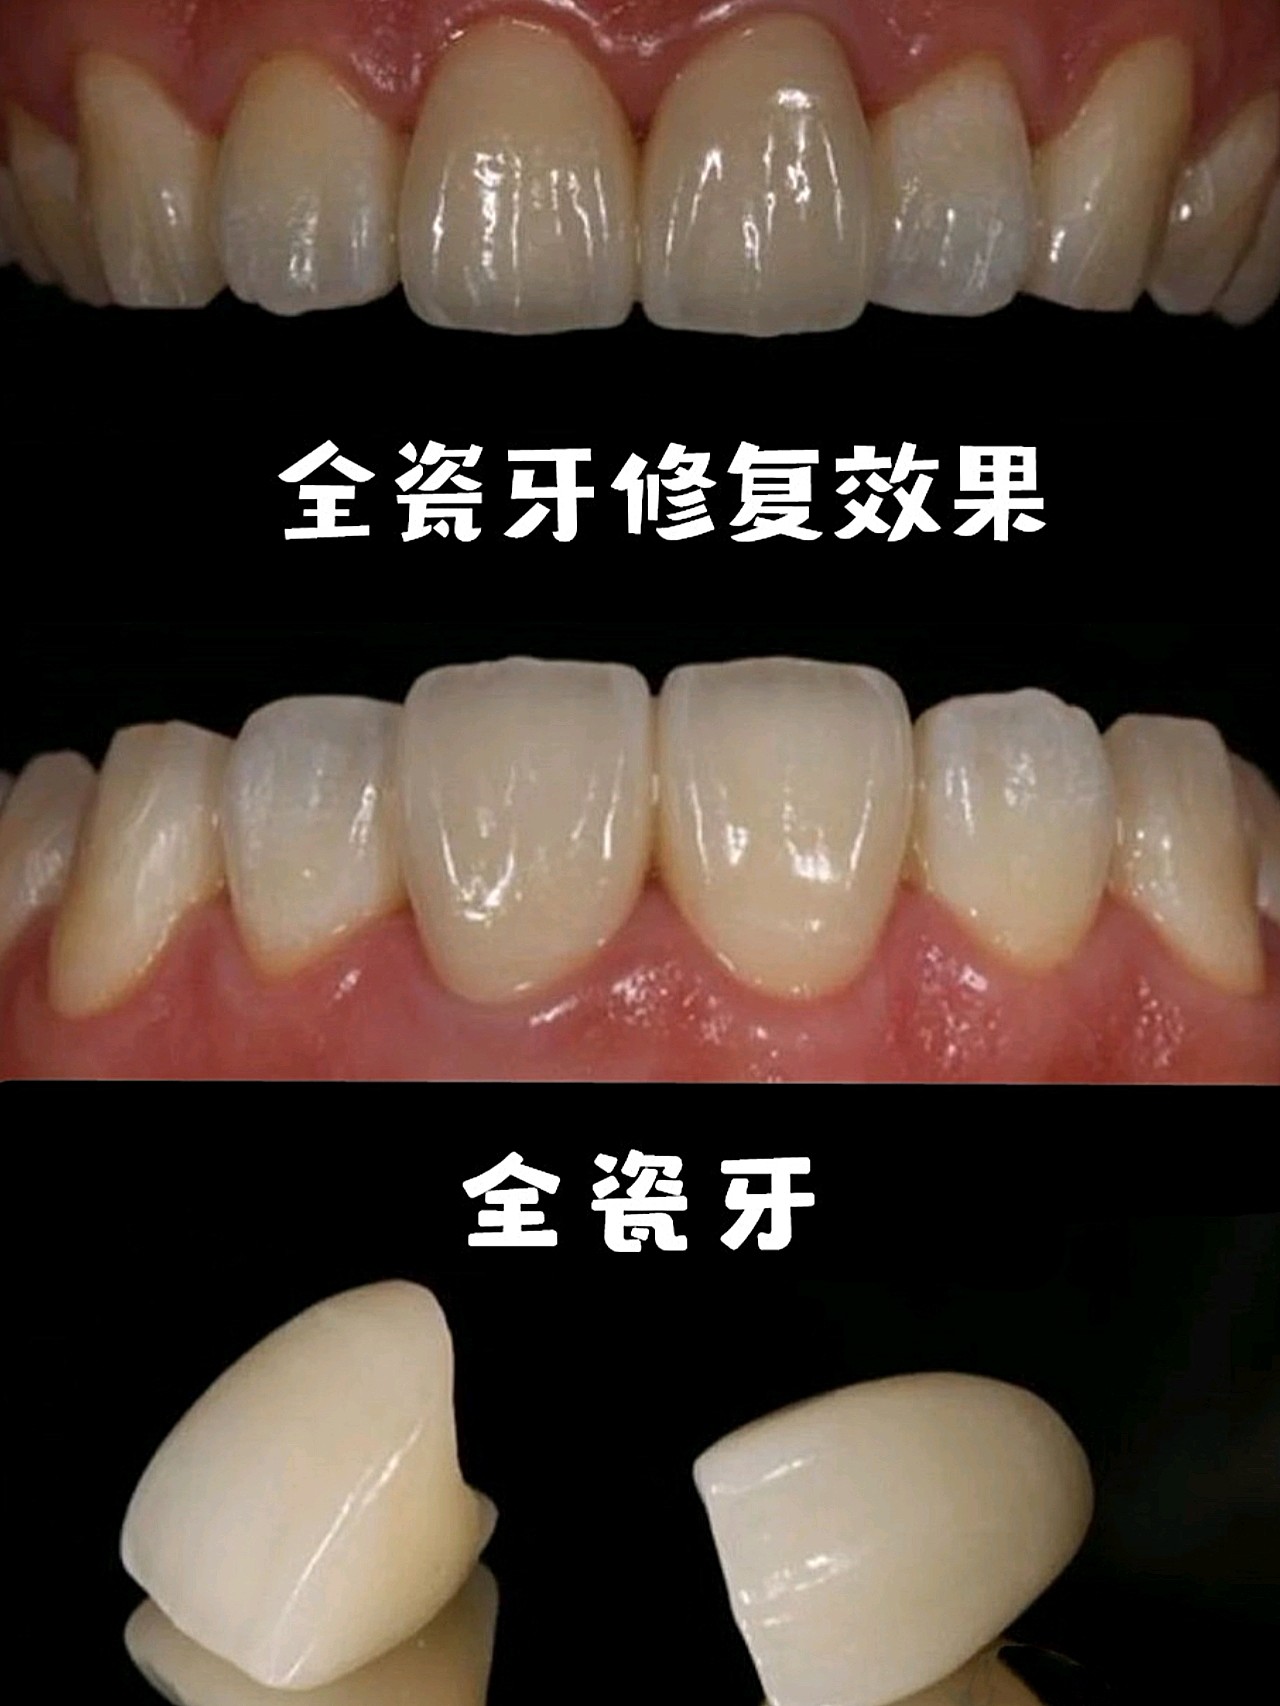 让牙齿恢复最初的面貌和功能",而这个"套上的硬壳"指的就是修复牙冠